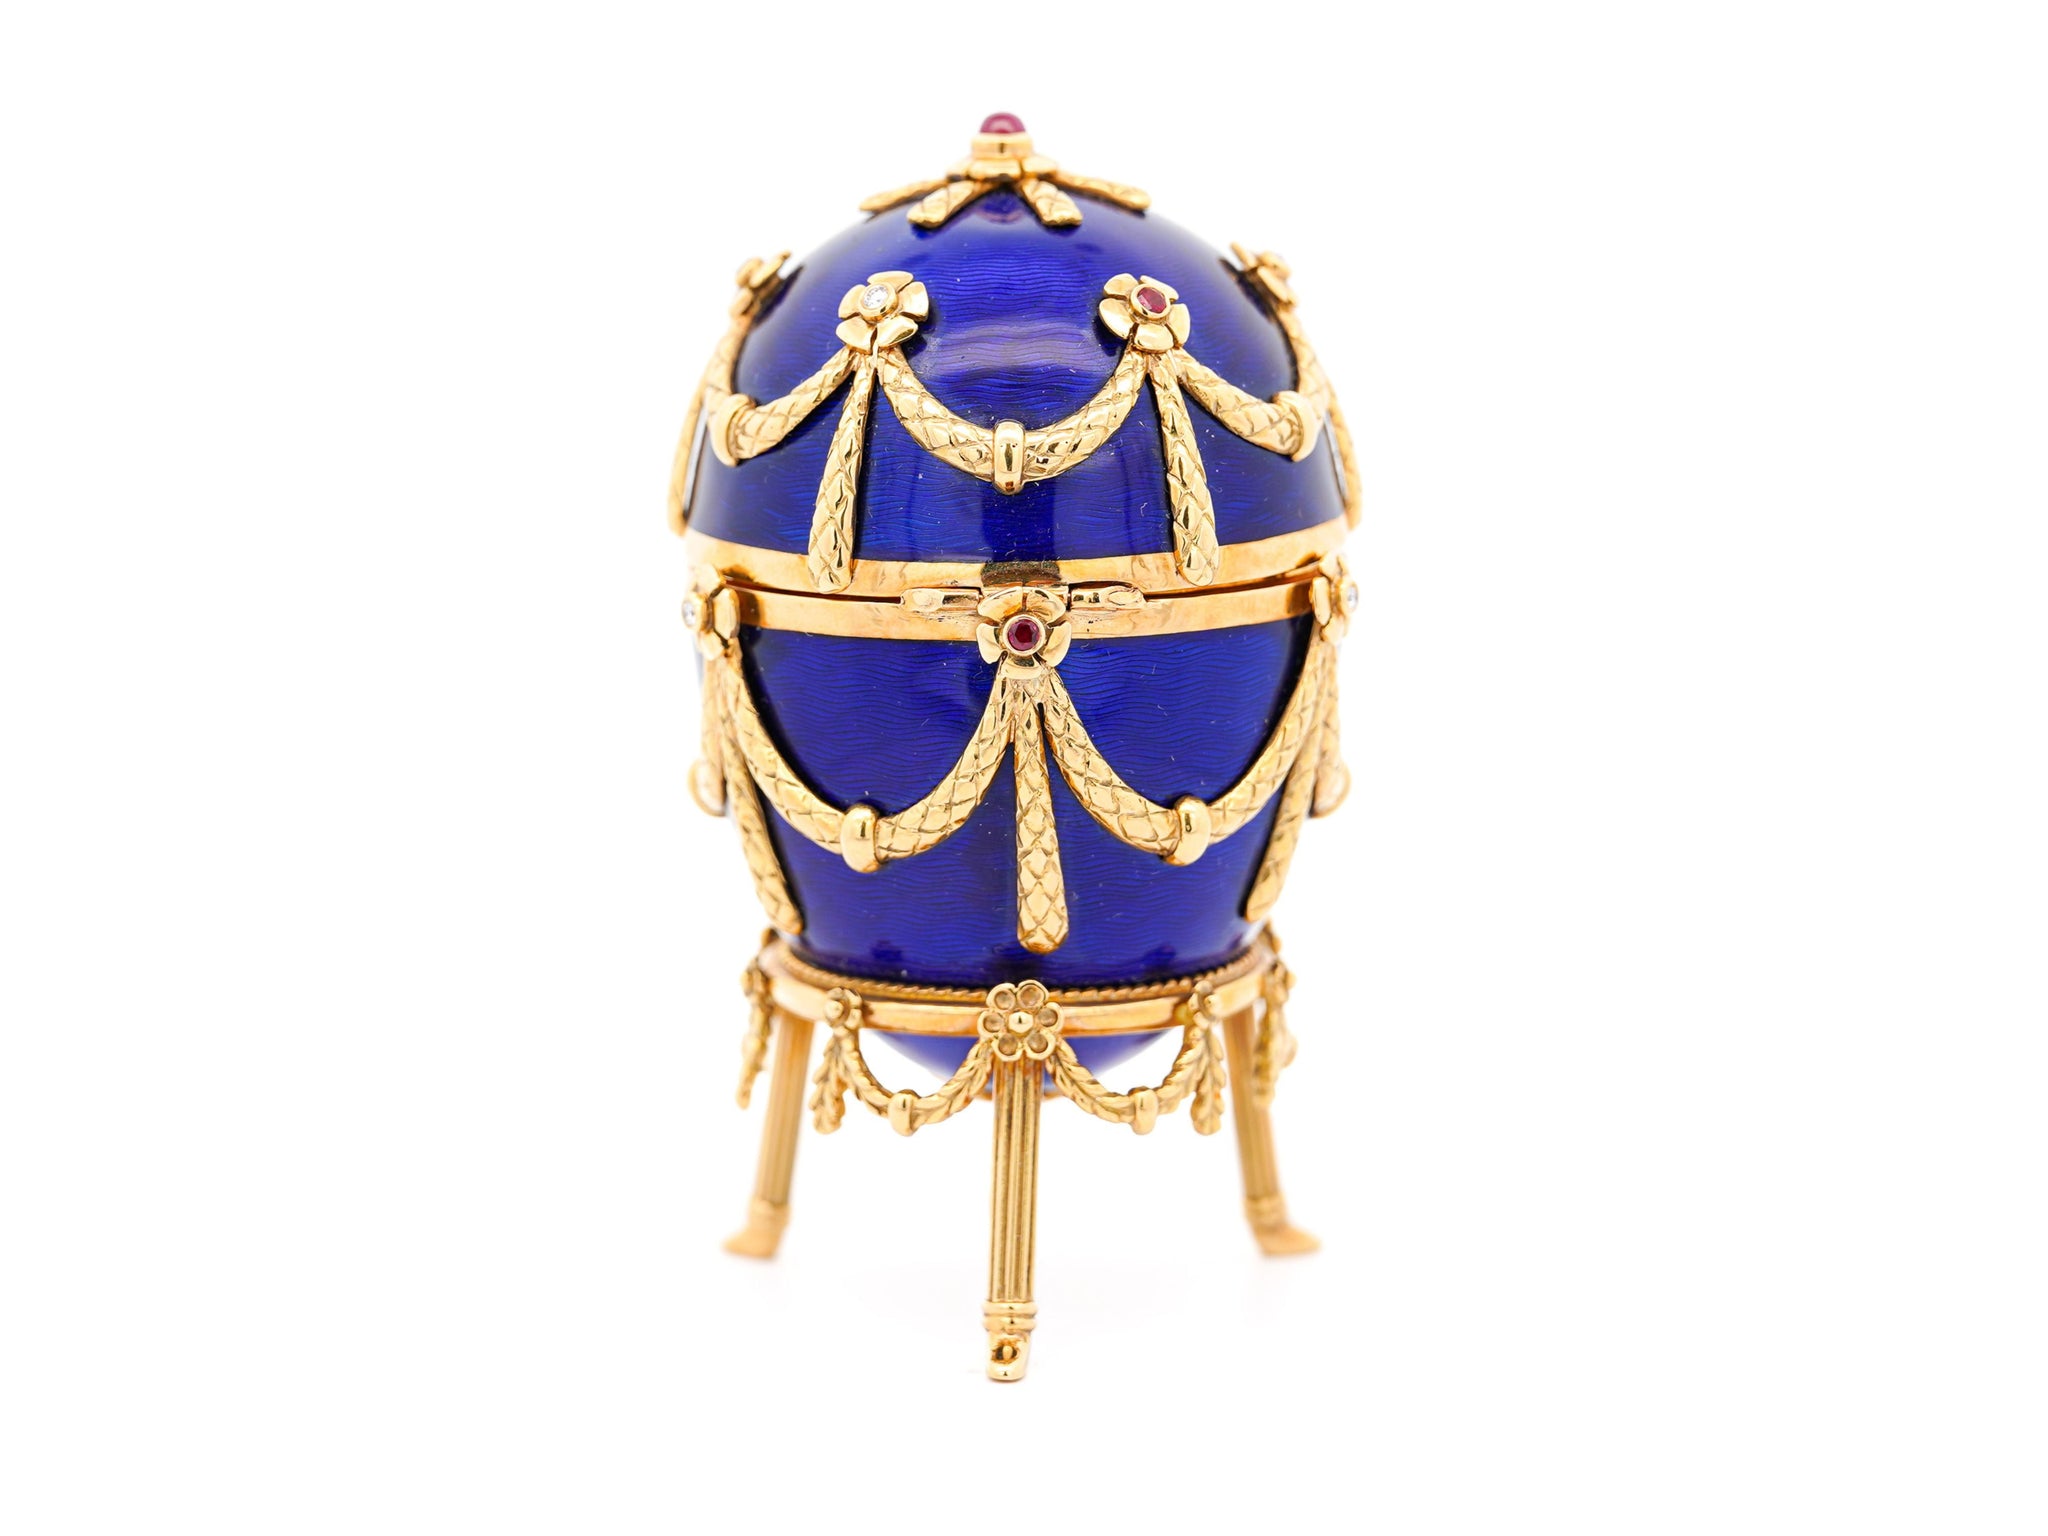 Original Fabergé Egg Victor Mayer 80/100 Blue Enamel with Original Box & Certificate